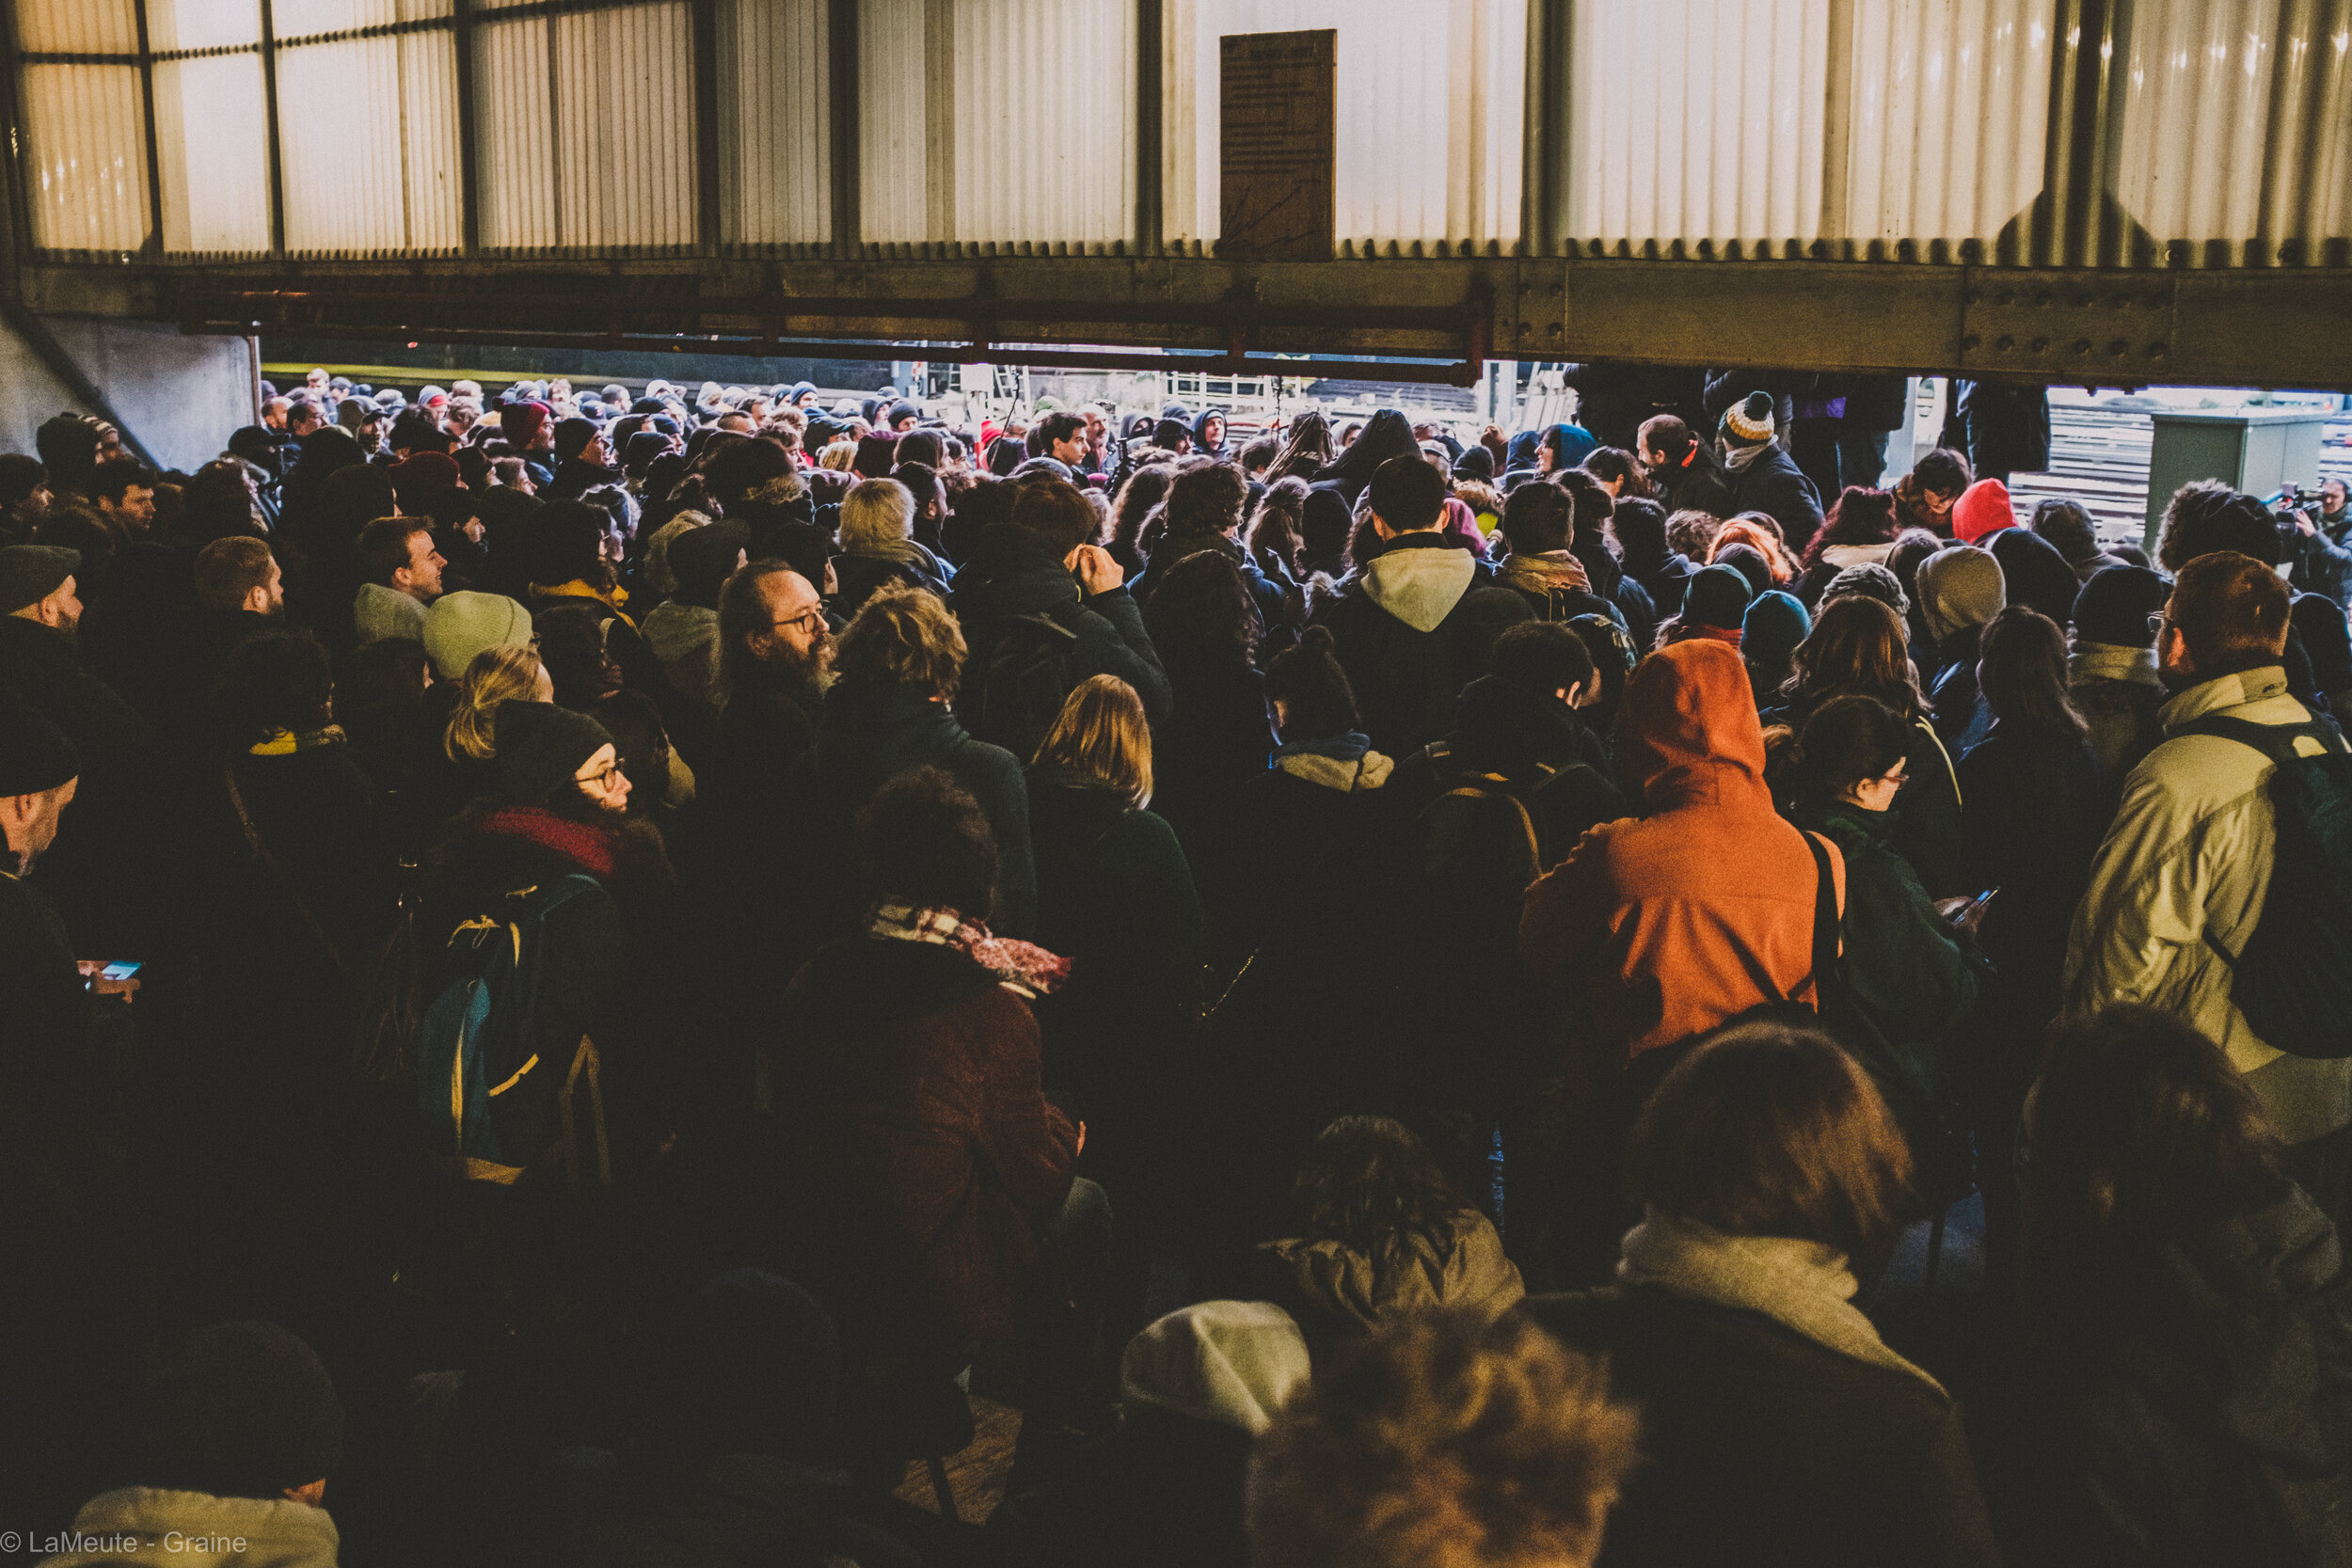  Plusieurs centaines de personnes assistent à l’assemblée générale, les yeux rivés sur la tribune à laquelle tout le monde peut s’exprimer. © LaMeute - Graine 